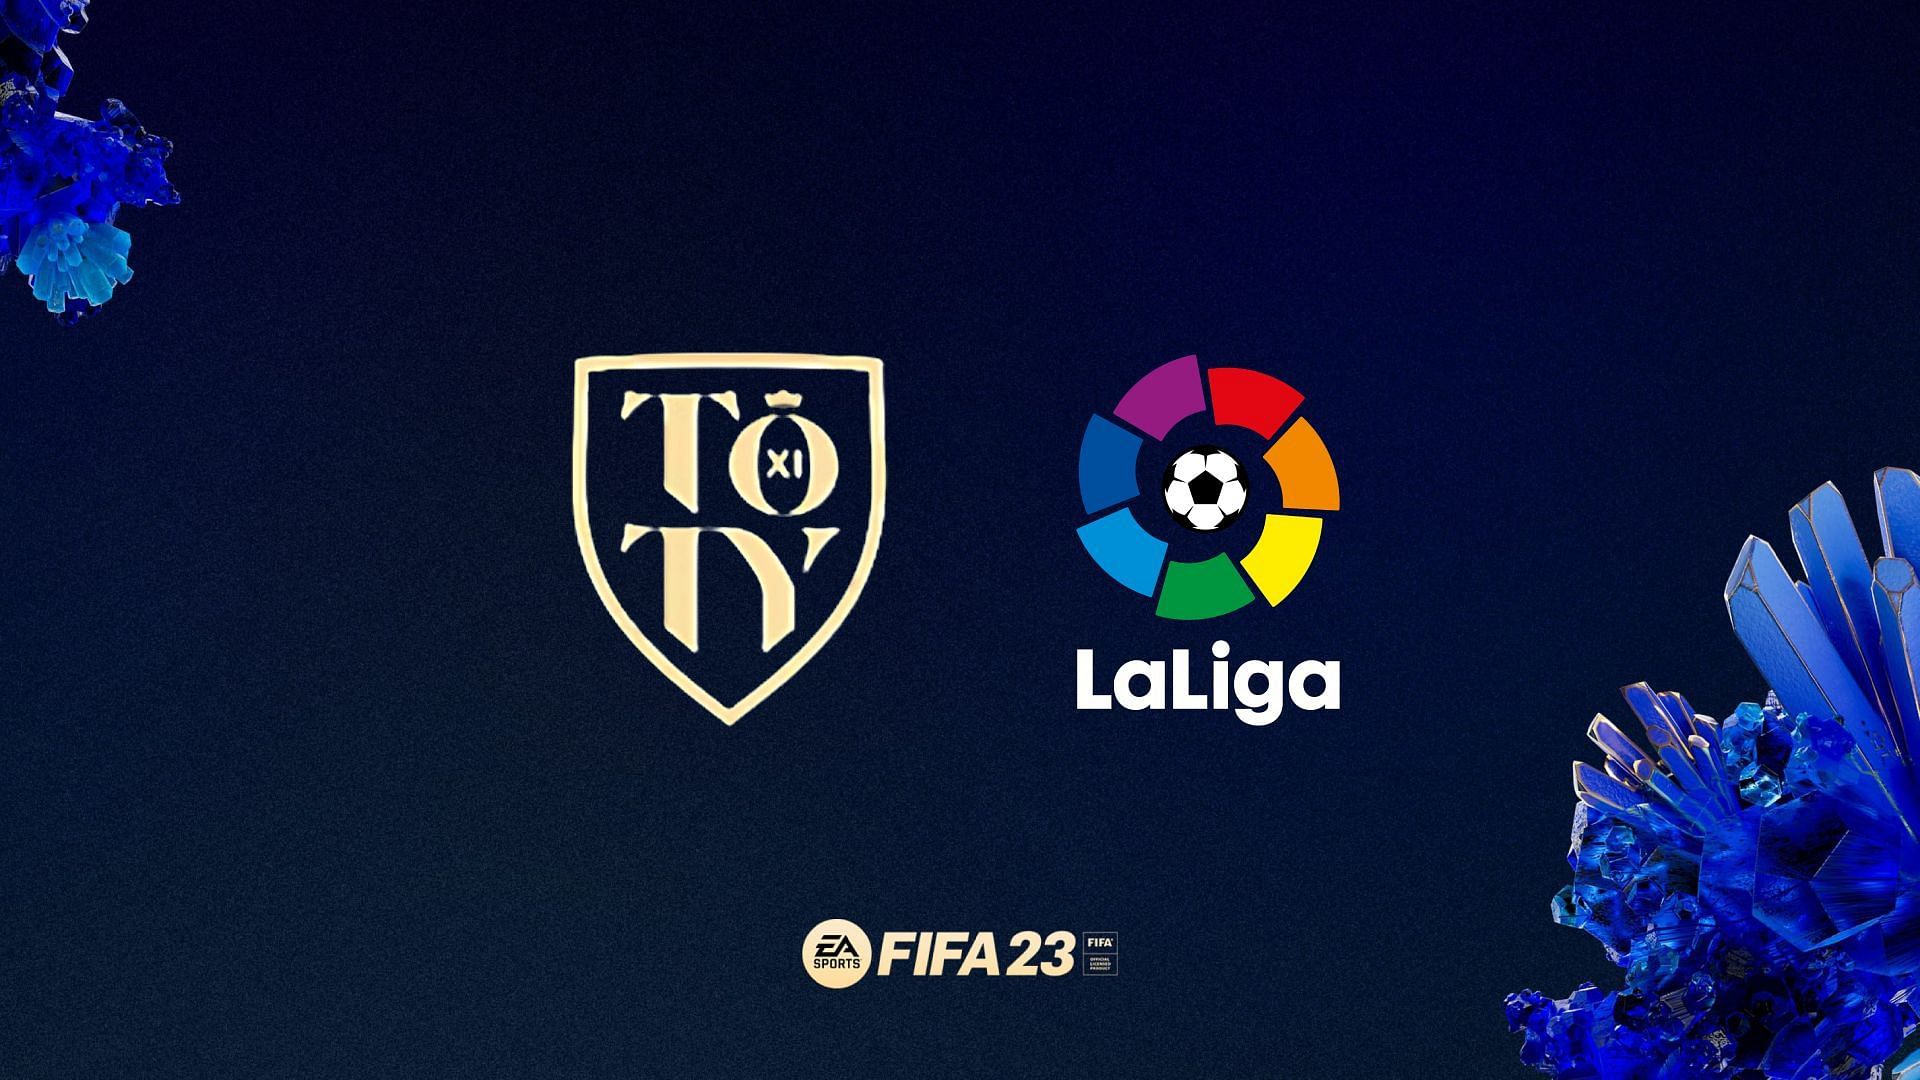 FIFA 23, La Liga